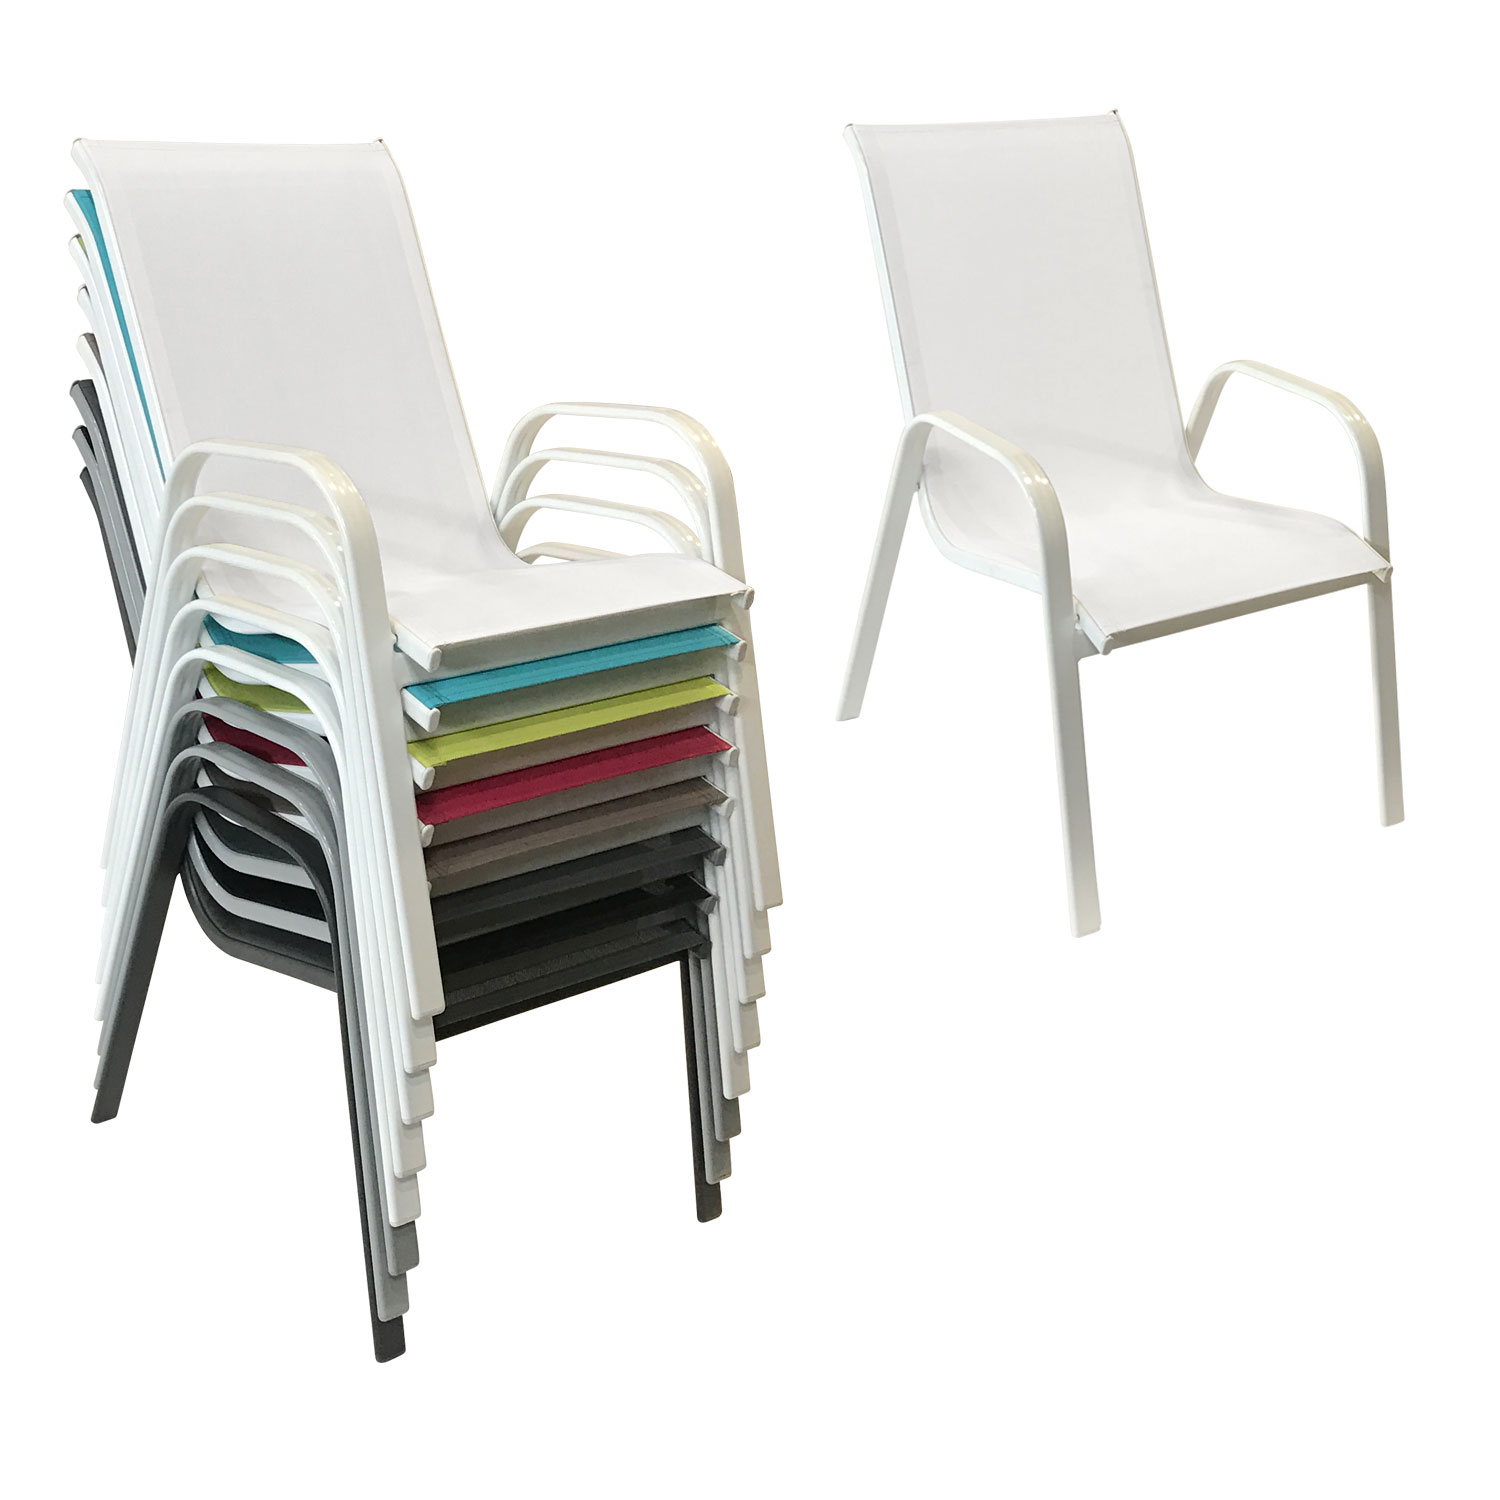 Lote de 8 sillas MARBELLA en textilene blanco - aluminio blanco